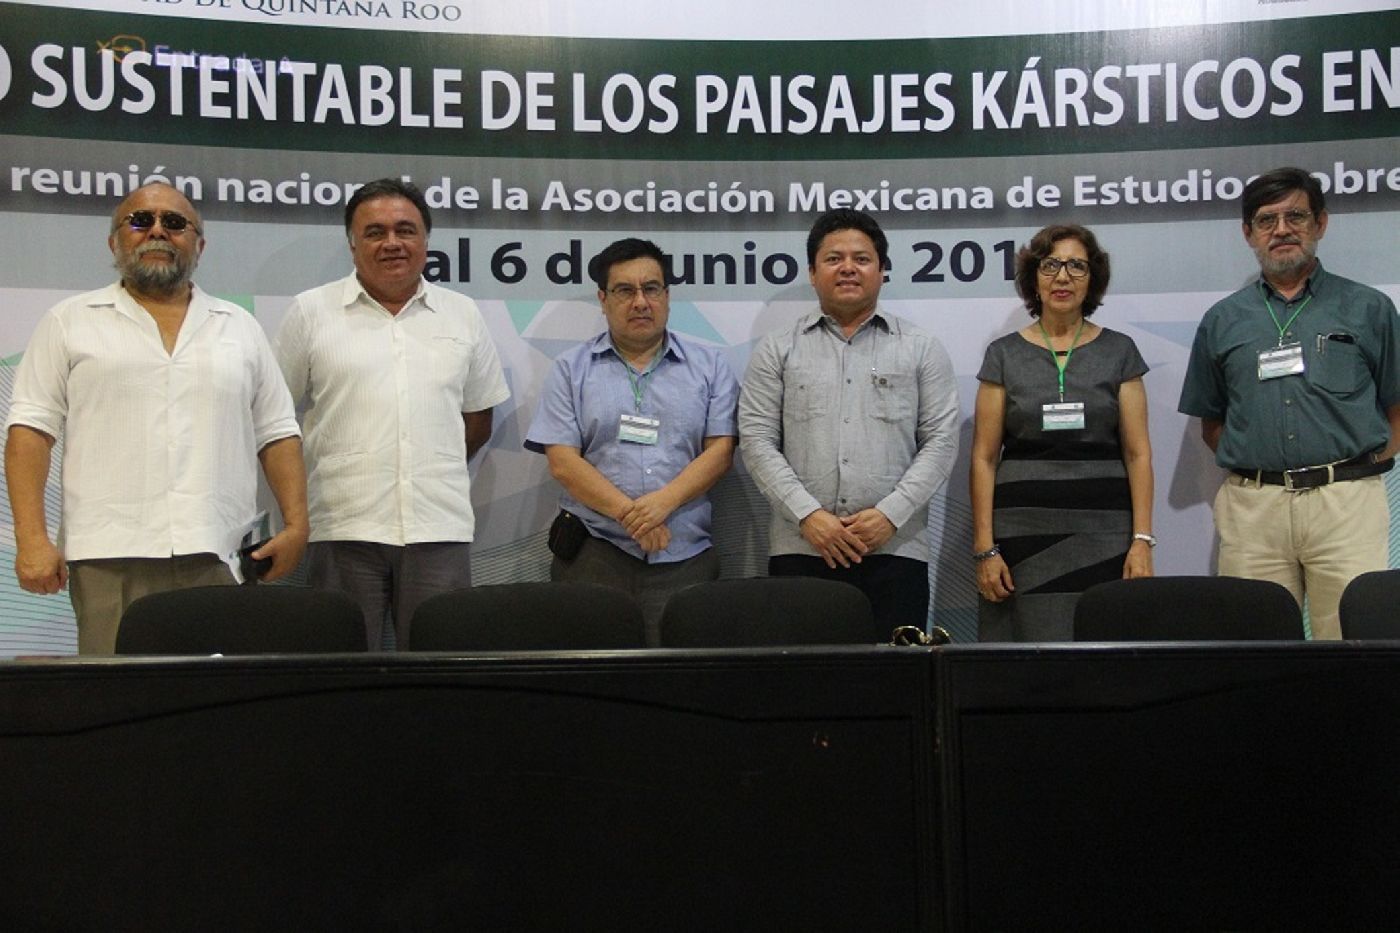 Reunión Nacional de la Academia Mexicana de Estudios sobre el Karst